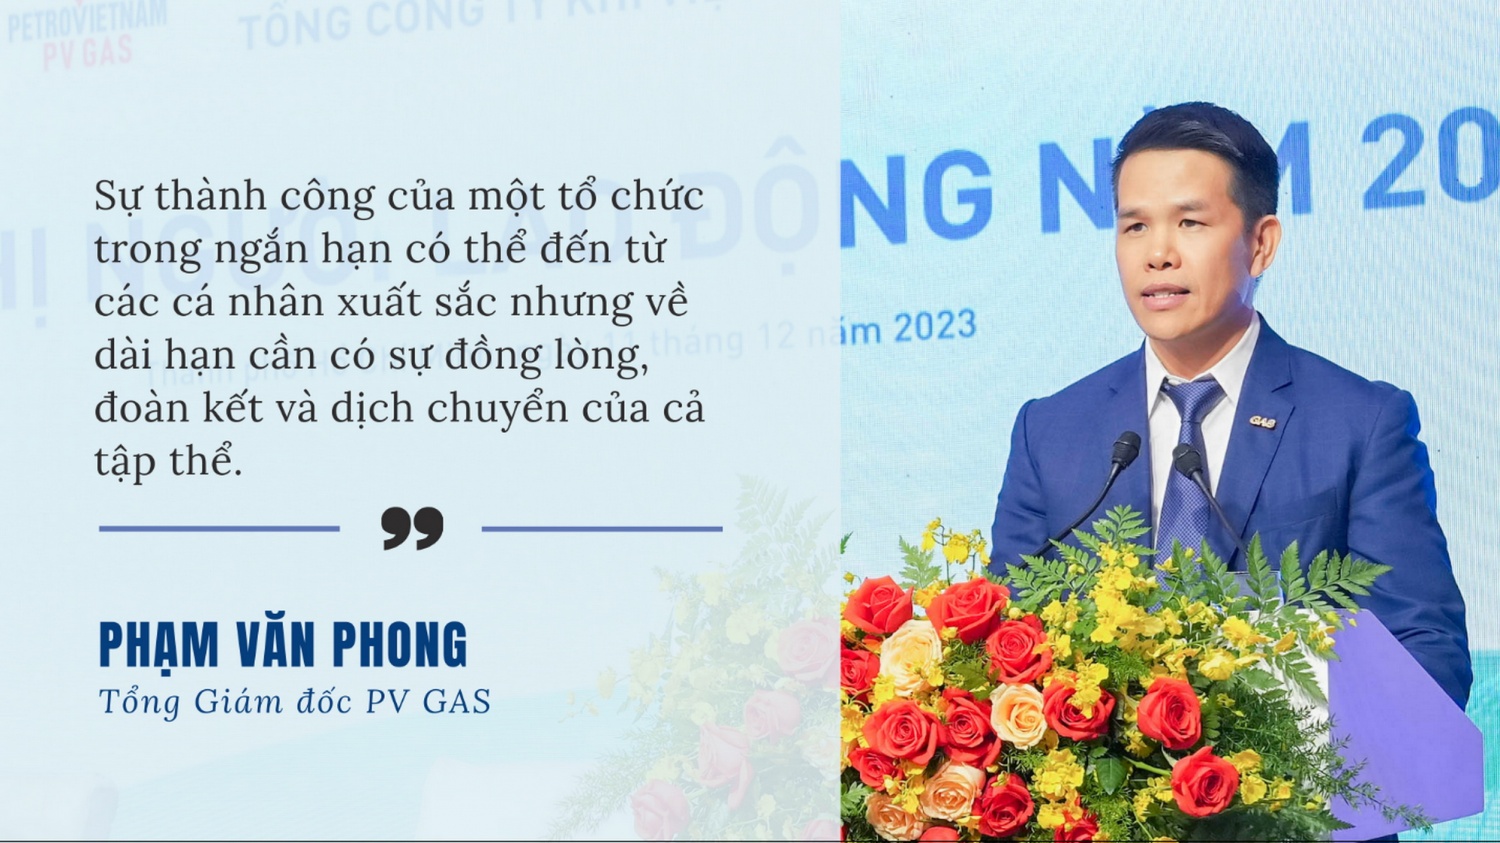 Tổng Giám đốc PV GAS Phạm Văn Phong: Phát huy tối đa tiềm lực, đa dạng hóa trong mô hình kinh doanh mới